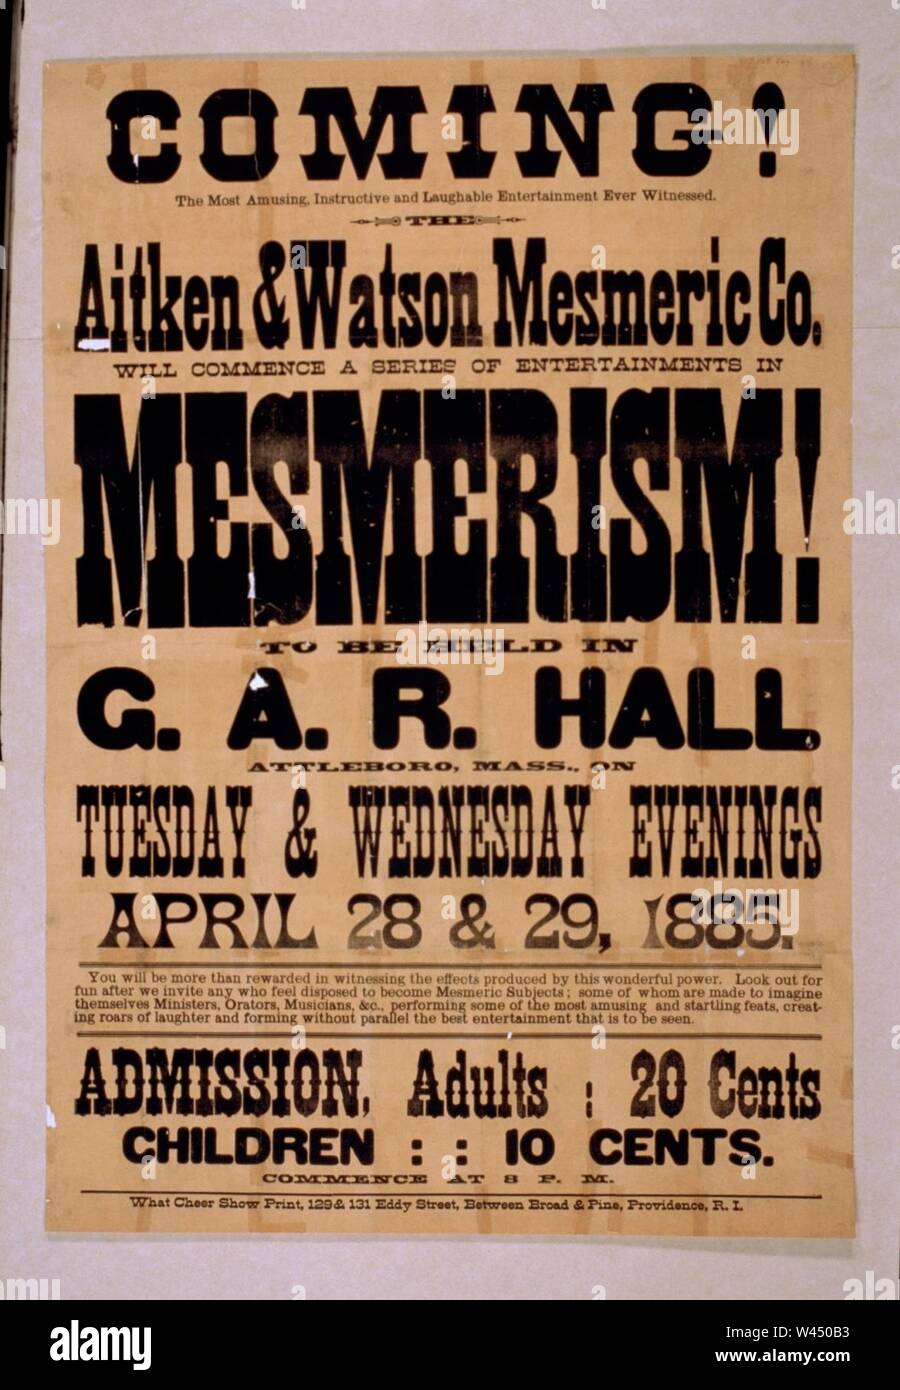 In arrivo! Aitken & Watson Mesmeric Co. avrà inizio una serie di intrattenimenti in mesmerism! Che si terrà in G.A.R. Hall, Attleboro, messa. il martedì e il mercoledì sera, aprile 28 & 29, 1885. Foto Stock